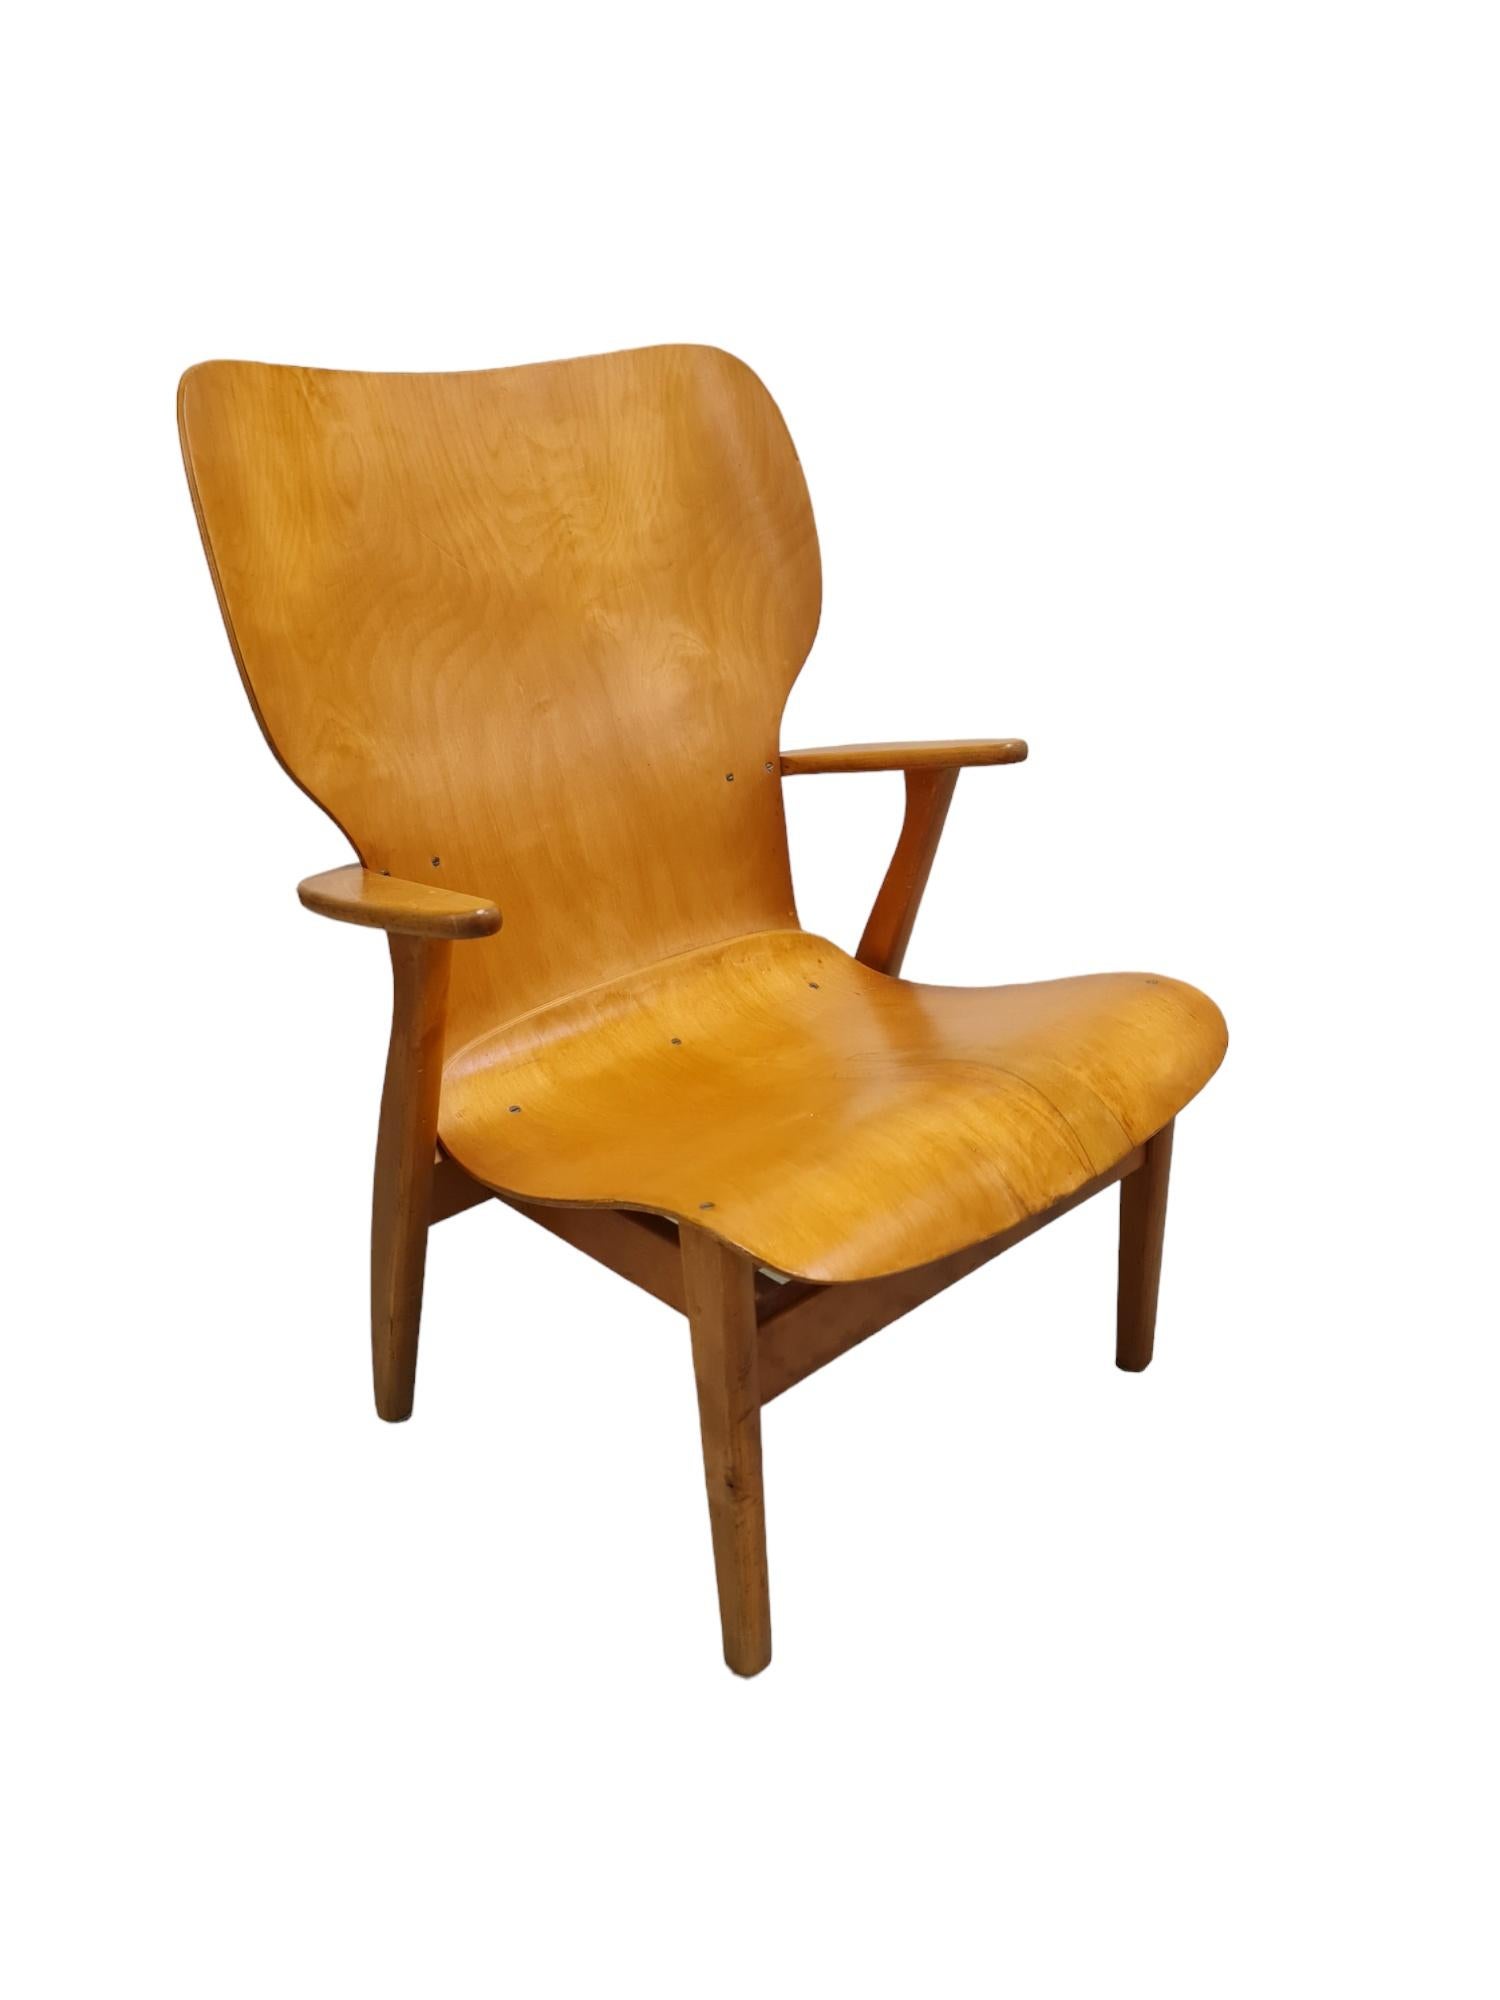 Der ikonische Domus Lounge Chair wurde ursprünglich für das Studentenwohnprojekt Domus Academica in Helsinki im Jahr 1947 entworfen. 
Diese schöne frühe Version ist mit dem Stempel des ersten Herstellers KP (Keravan Puuteollisuus) versehen und der